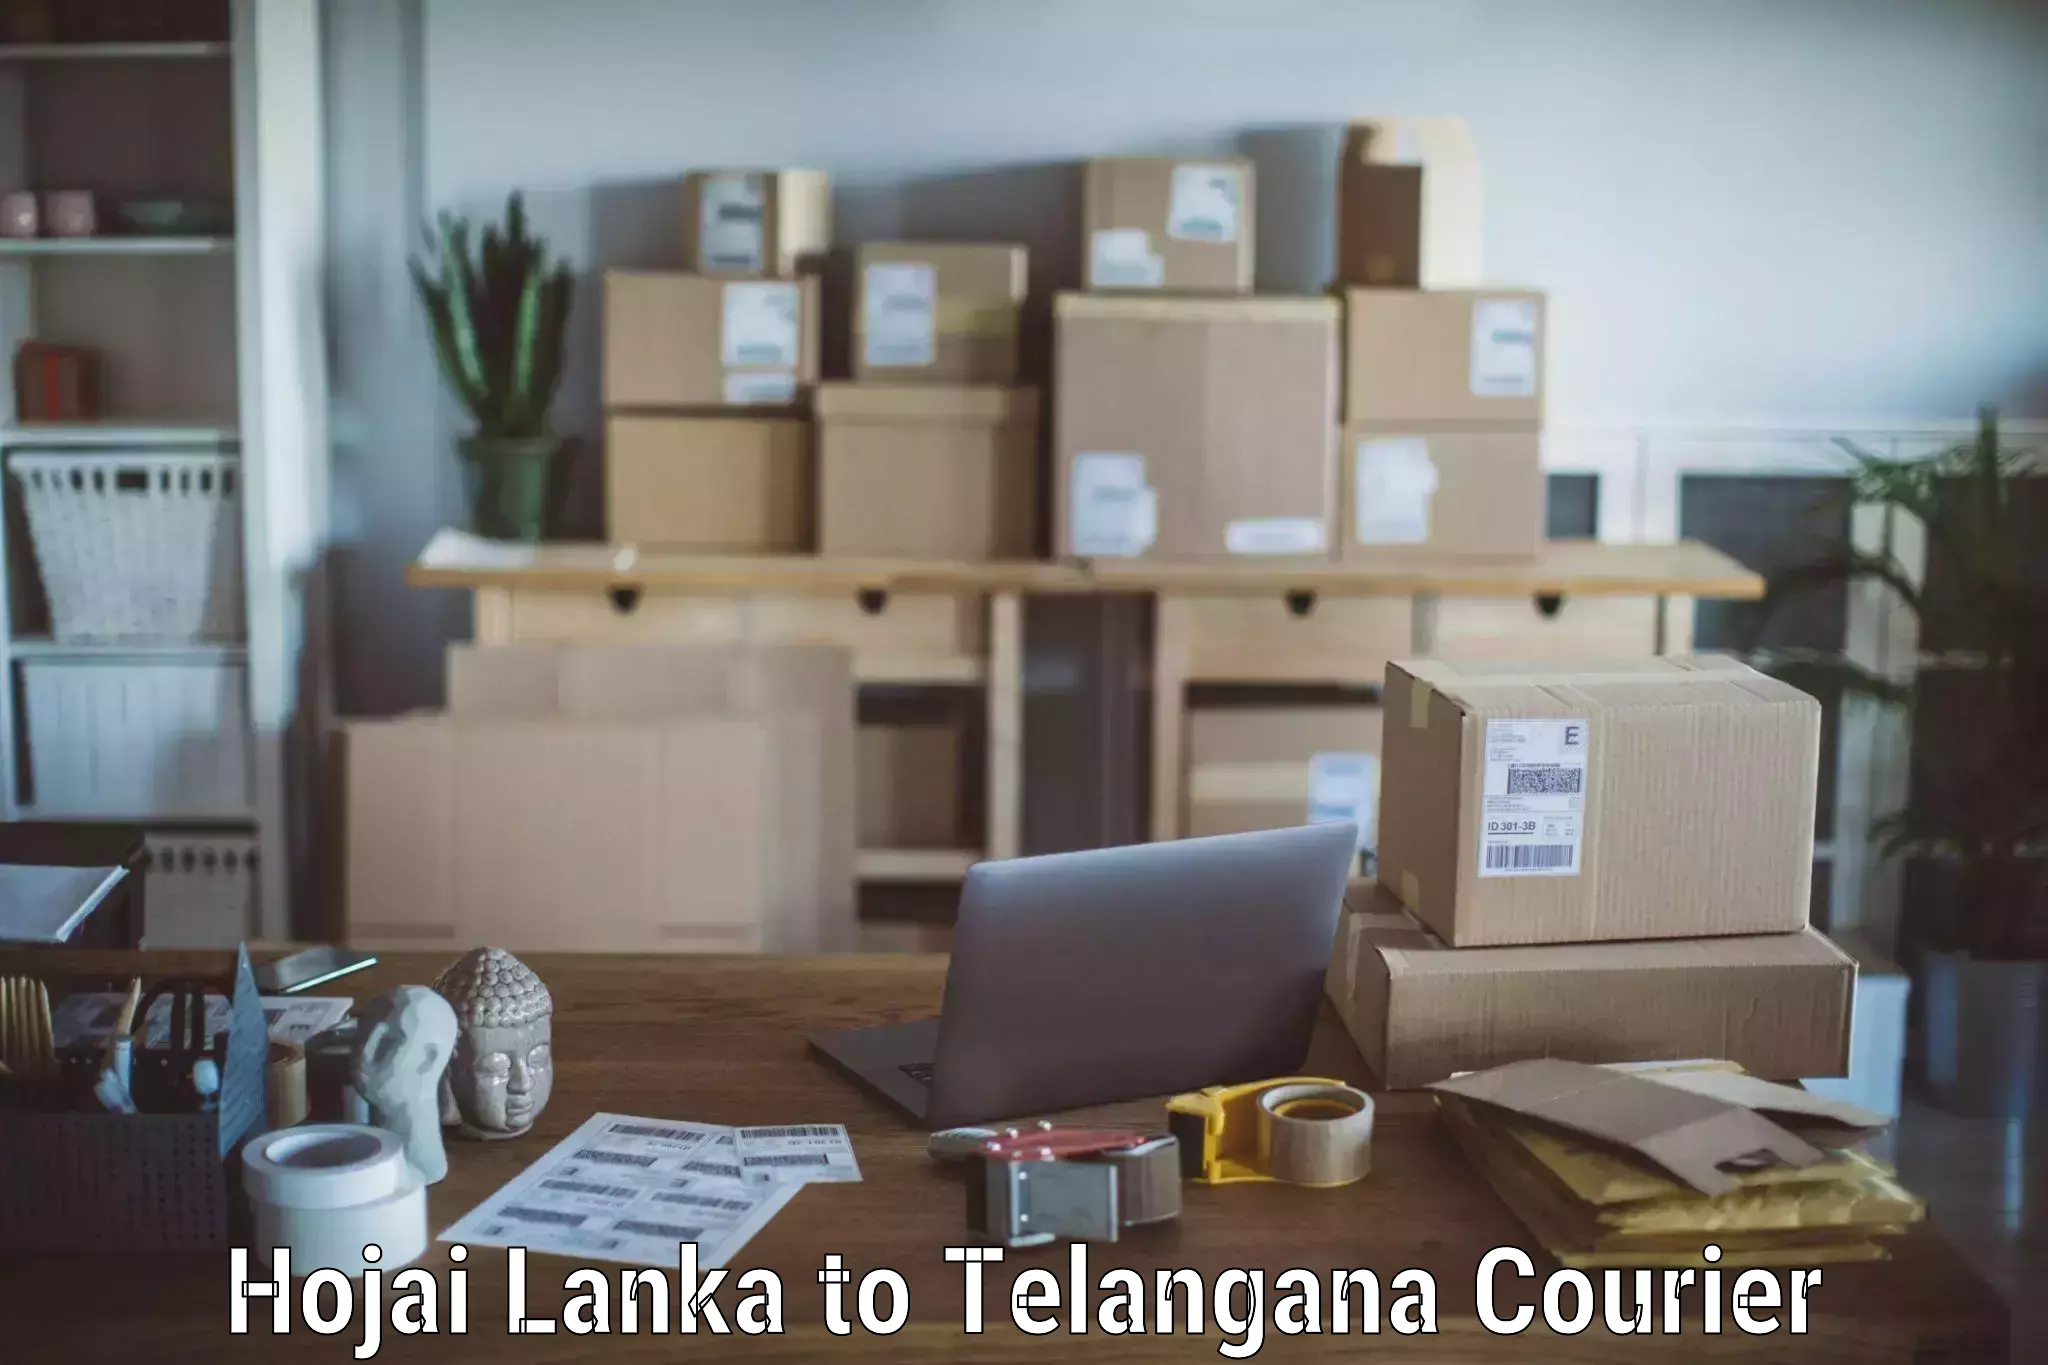 Furniture moving plans Hojai Lanka to Jainoor